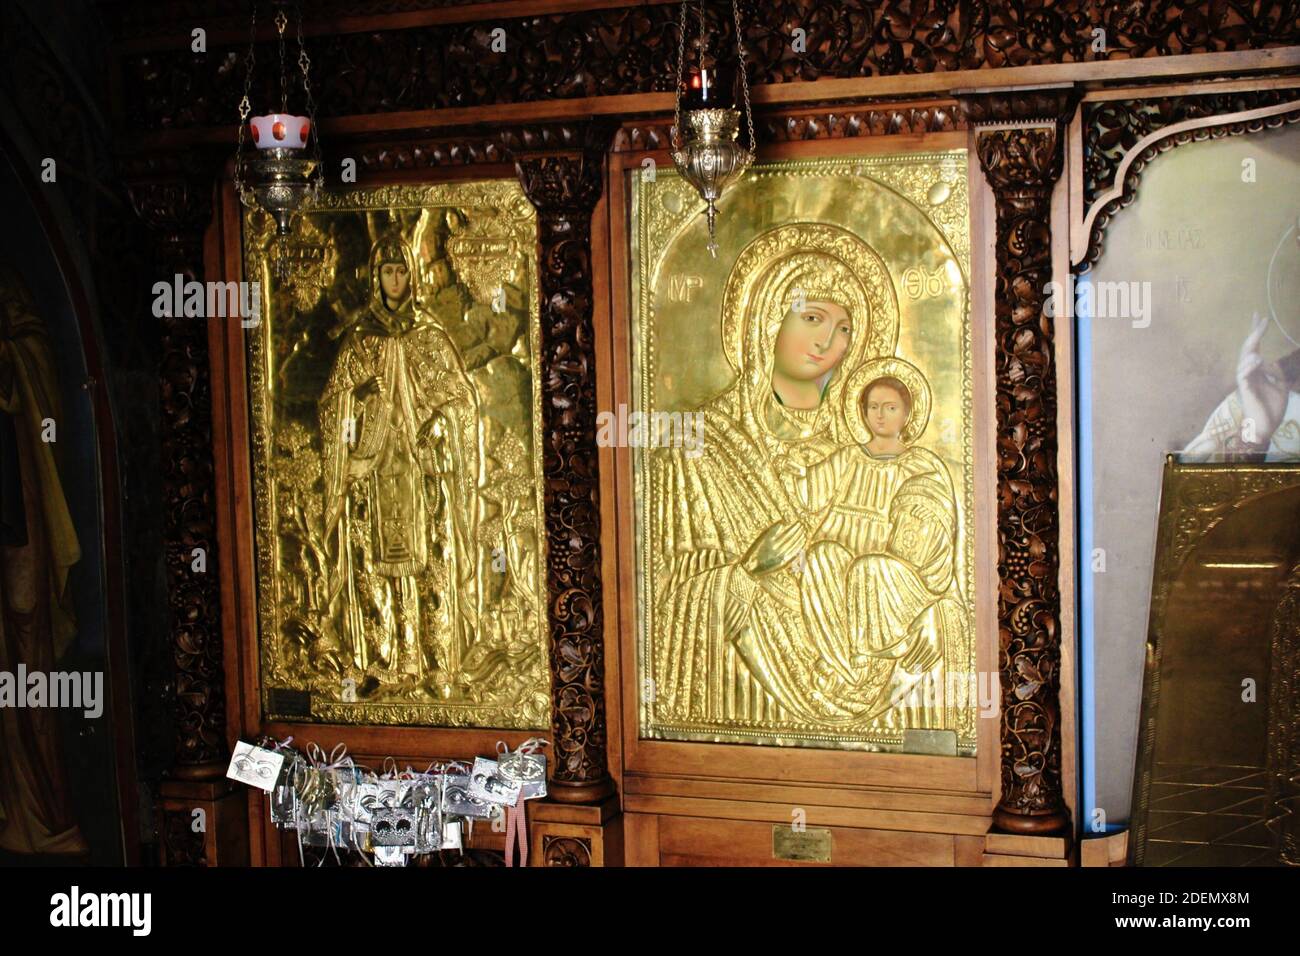 Icona greca ortodossa della Vergine Maria con Gesù Cristo. L'icona è realizzata a mano e ricoperta di oro - Atene, Grecia, marzo 12 2020. Foto Stock